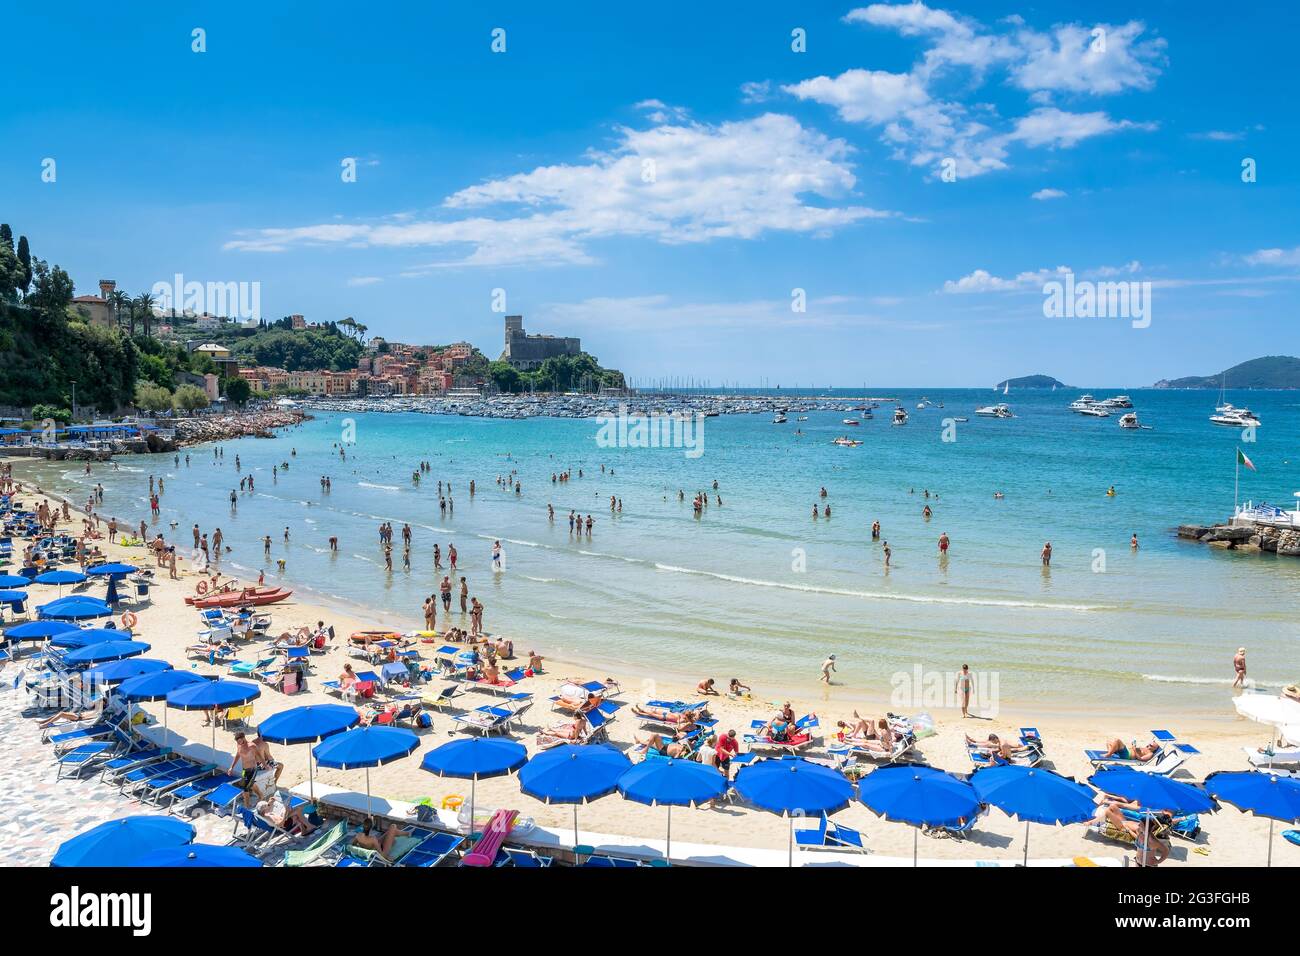 Lerici, Italien - 18. Juni 2017: Einheimische und Touristen genießen Strand und Stadt in Lerici, Italien. Lerici befindet sich im Golf der Dichter von La Spezia, Ligurien Stockfoto